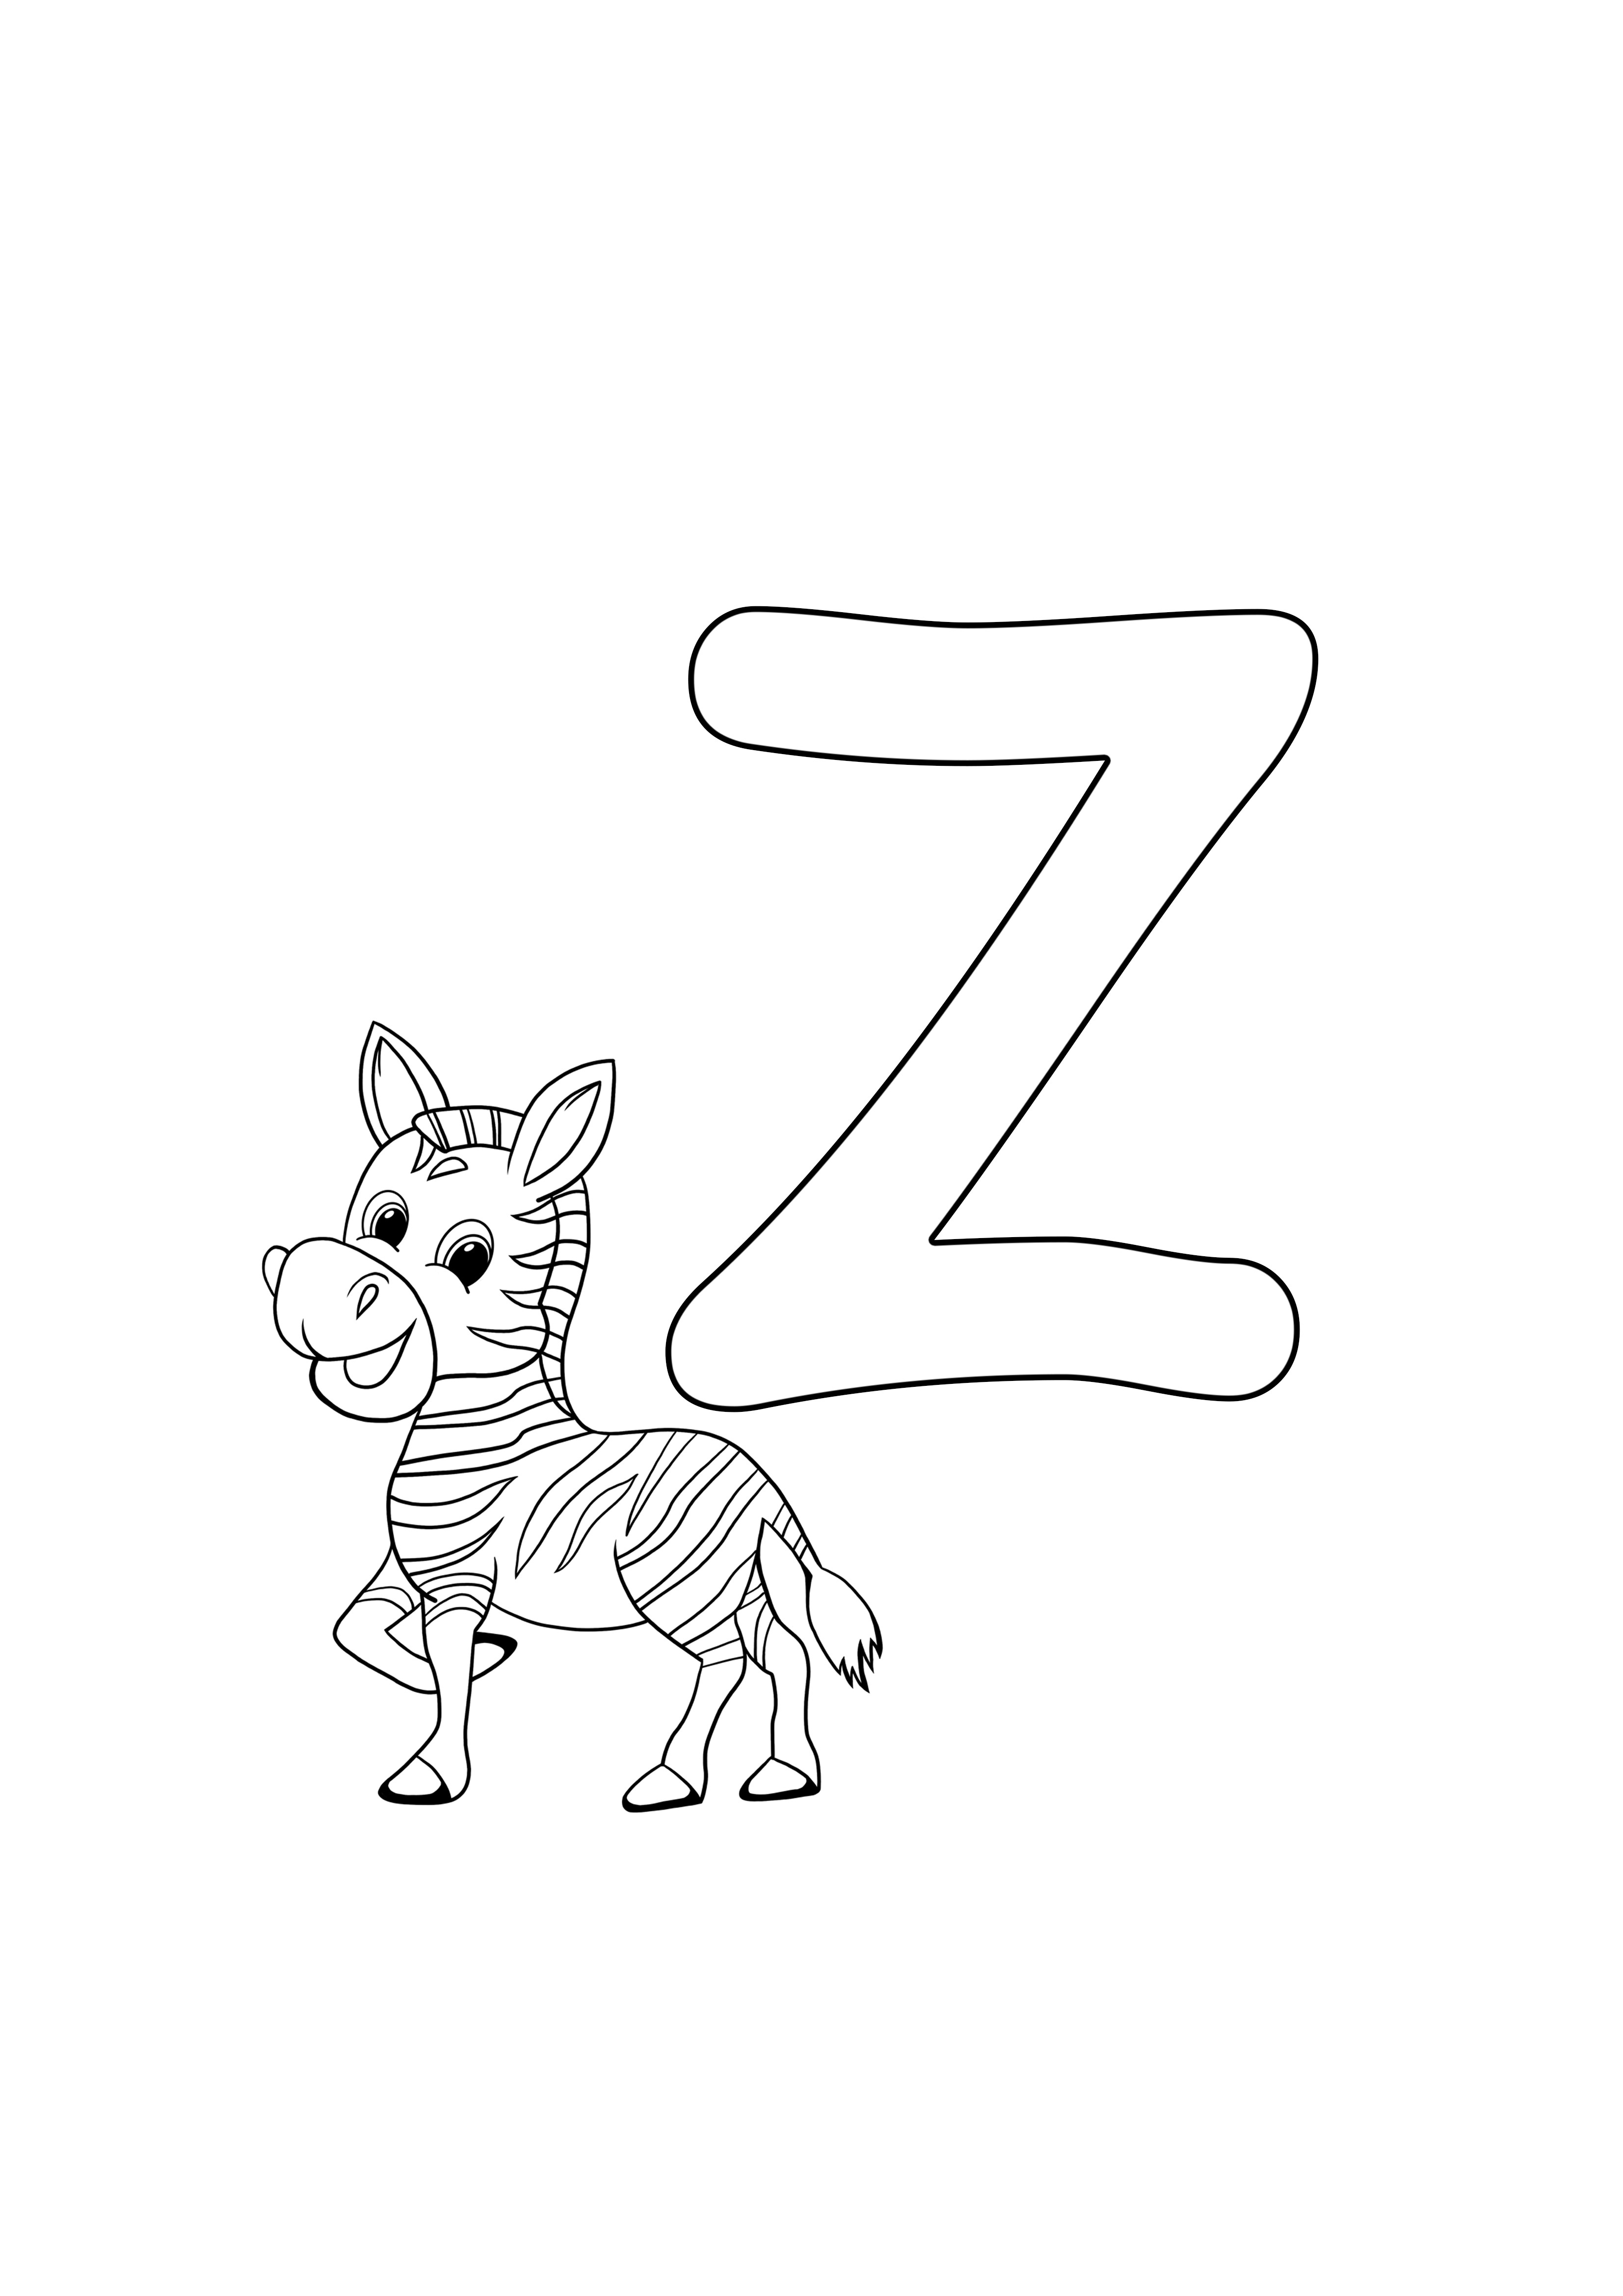 z untuk zebra gratis untuk dicetak, gratis untuk mewarnai halaman